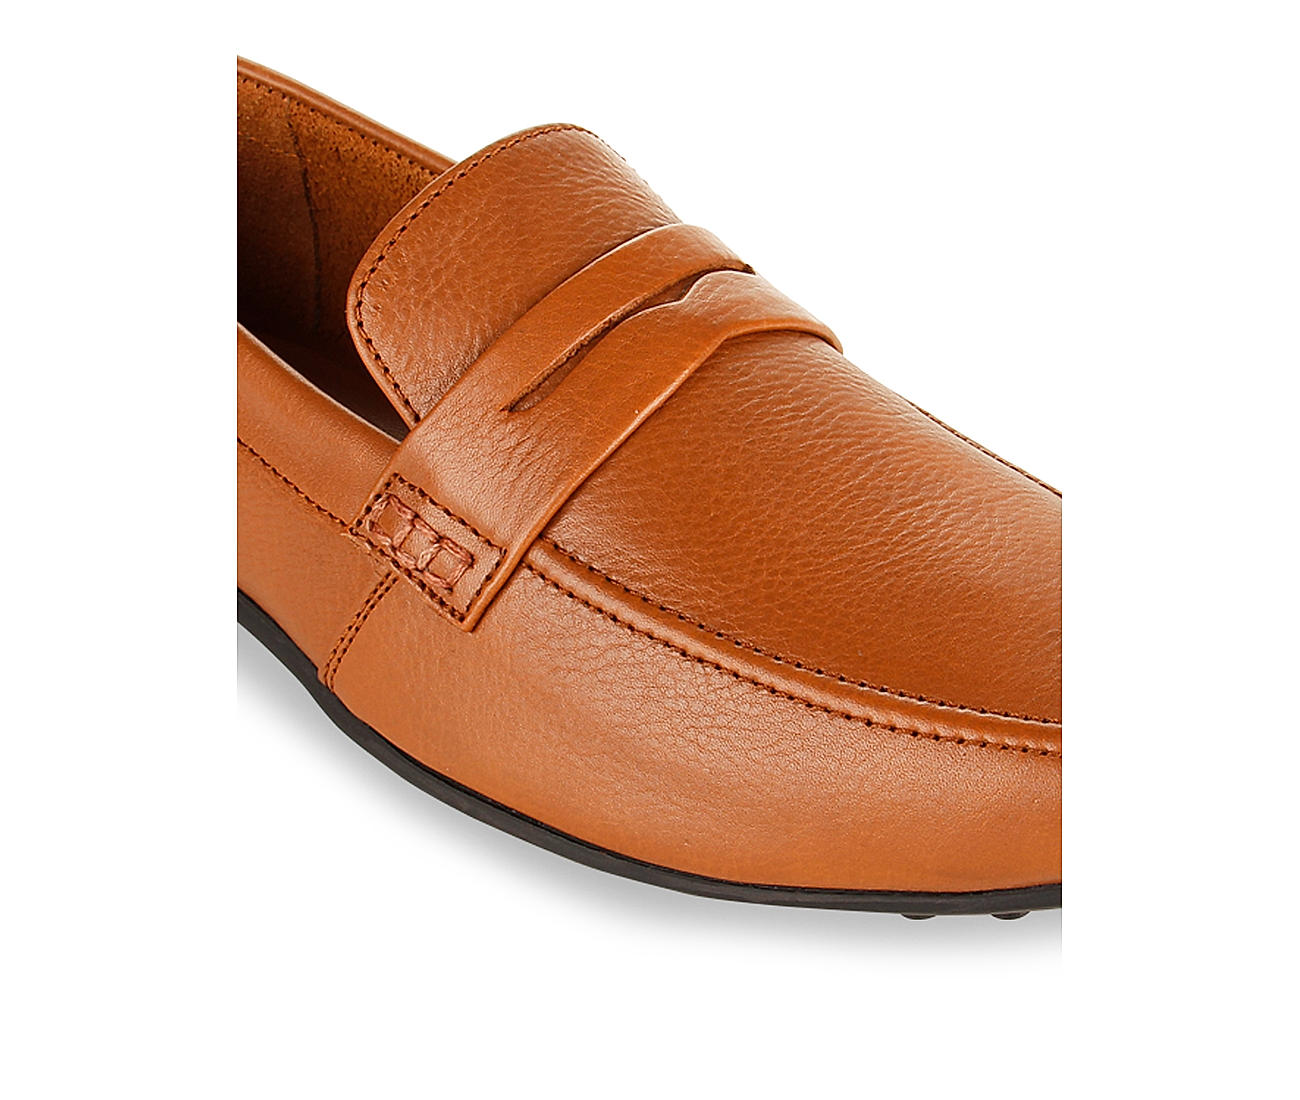 Buy Regal Tan Men formal Leather Slip On Shoes for Men Online at